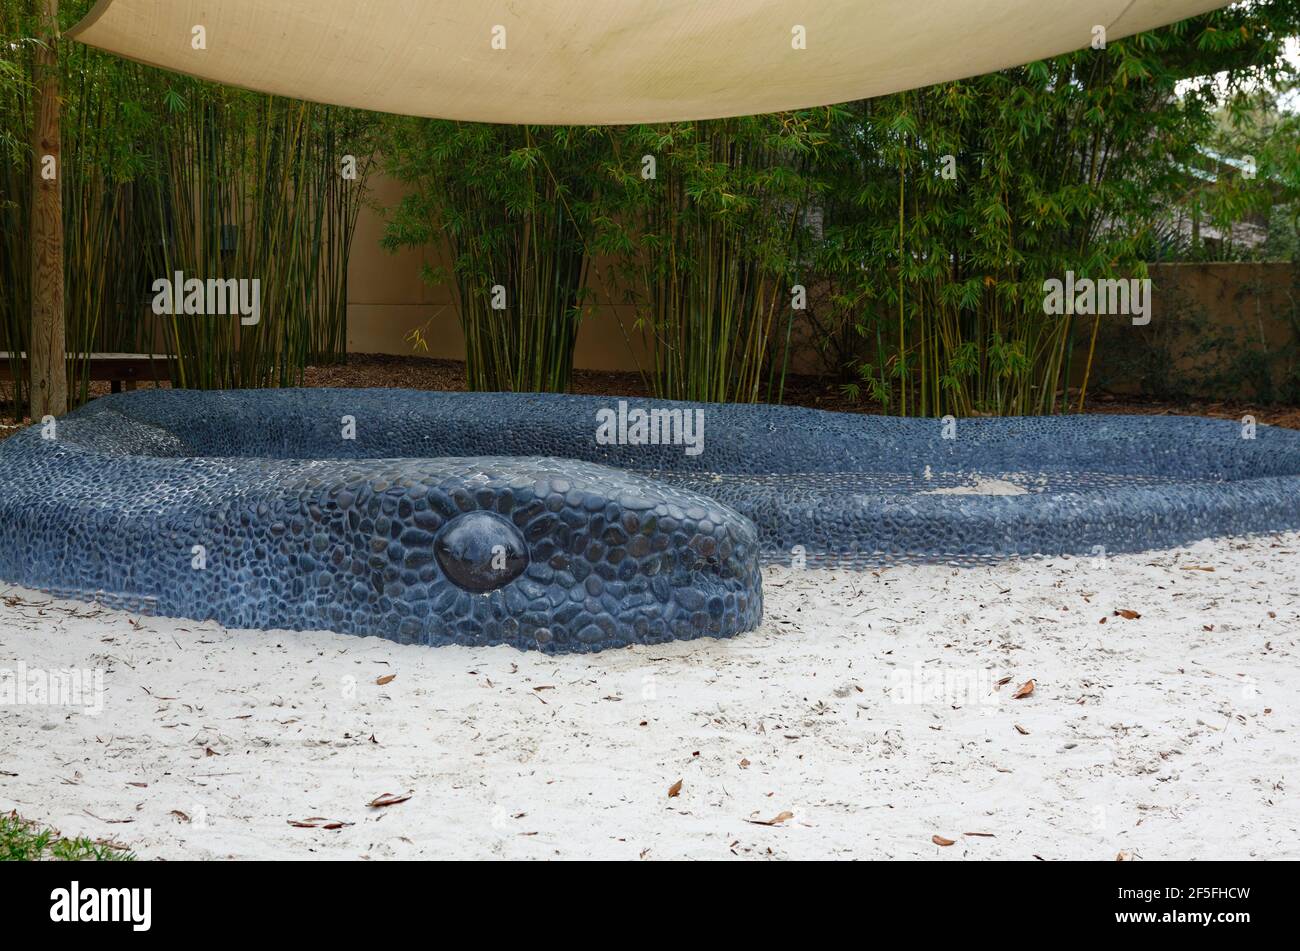 Hamac Hollow Children's Garden, Indigo Pass, sculpture de serpent en mosaïque de galet noir entoure le cercle de sable, jouer, découverte-basé apprentissage, amusement, unique Banque D'Images